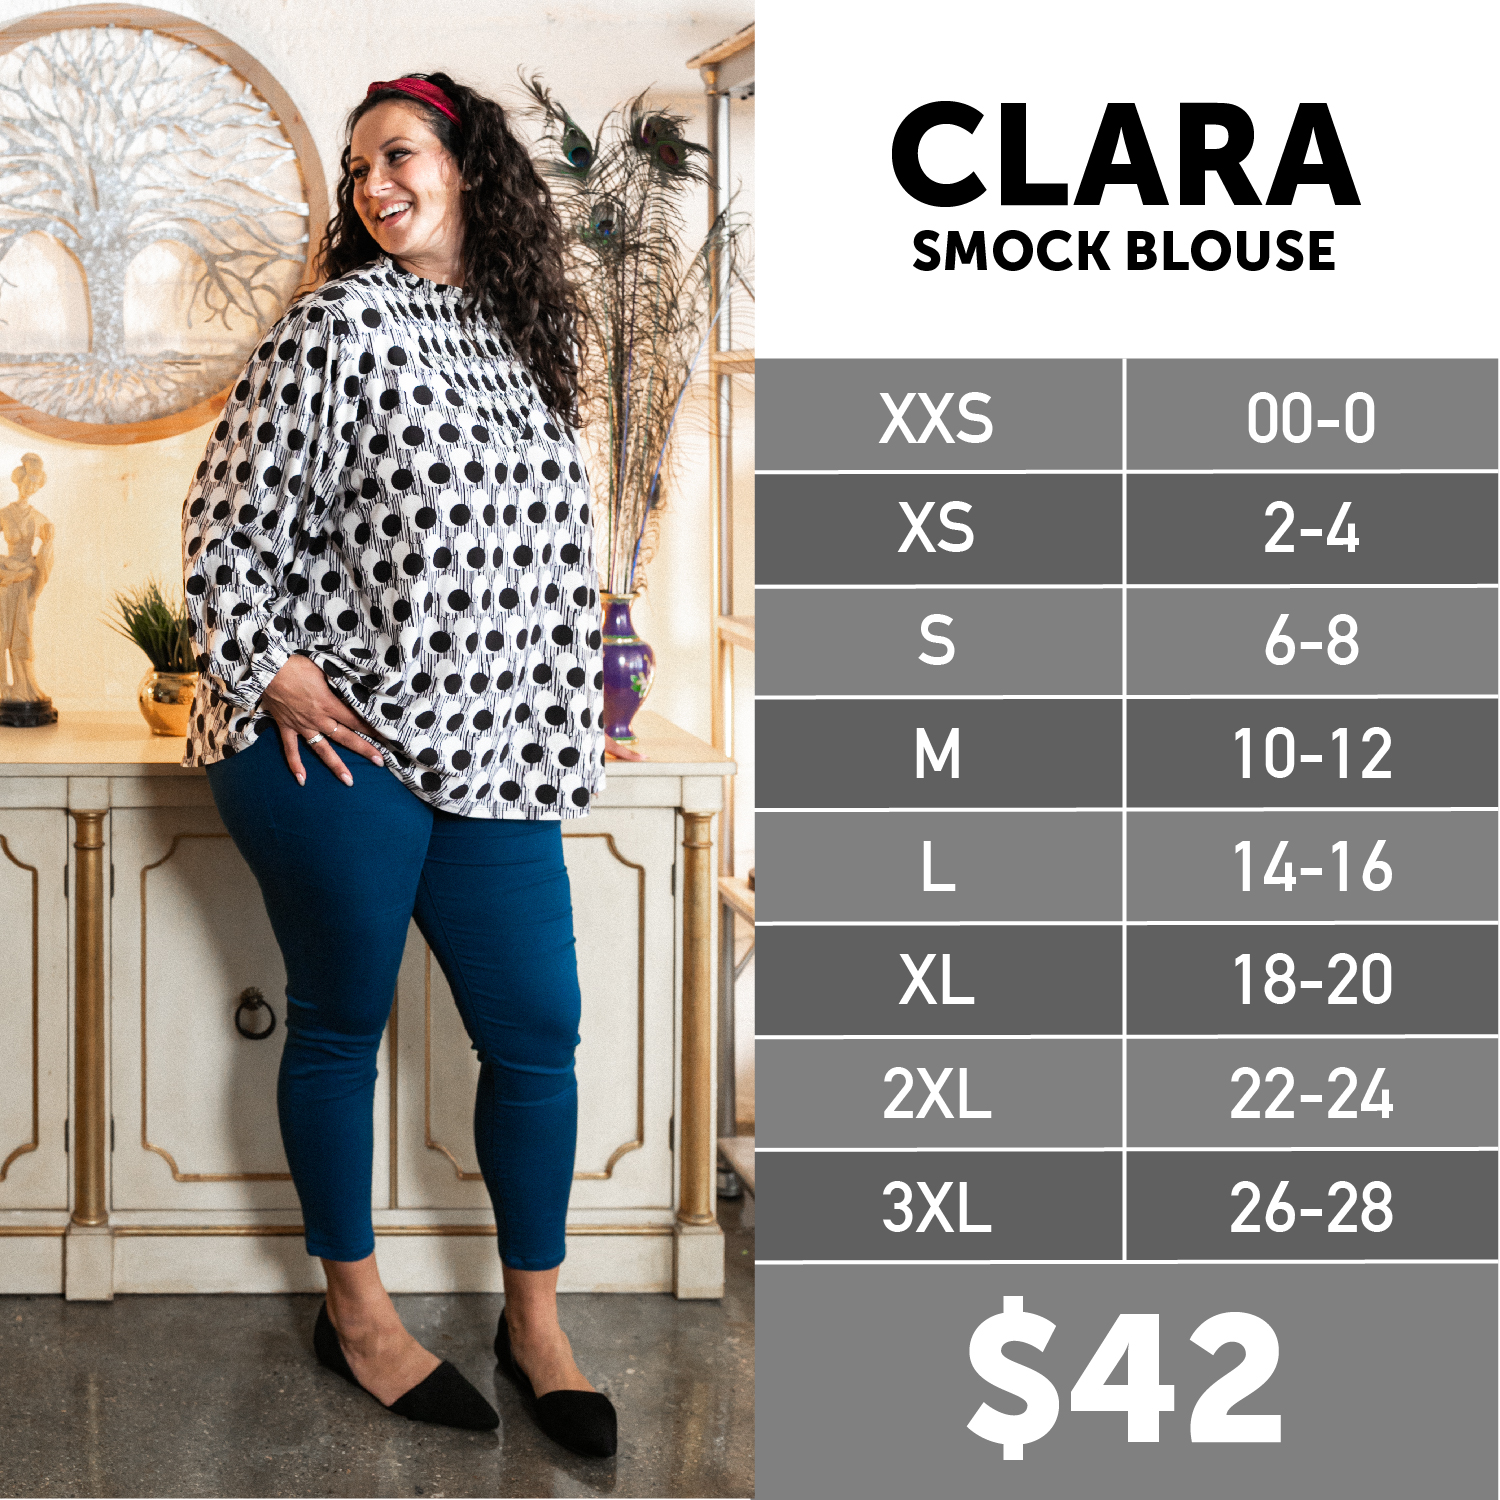 Lularoe Clara Smock Blouse Size Chart